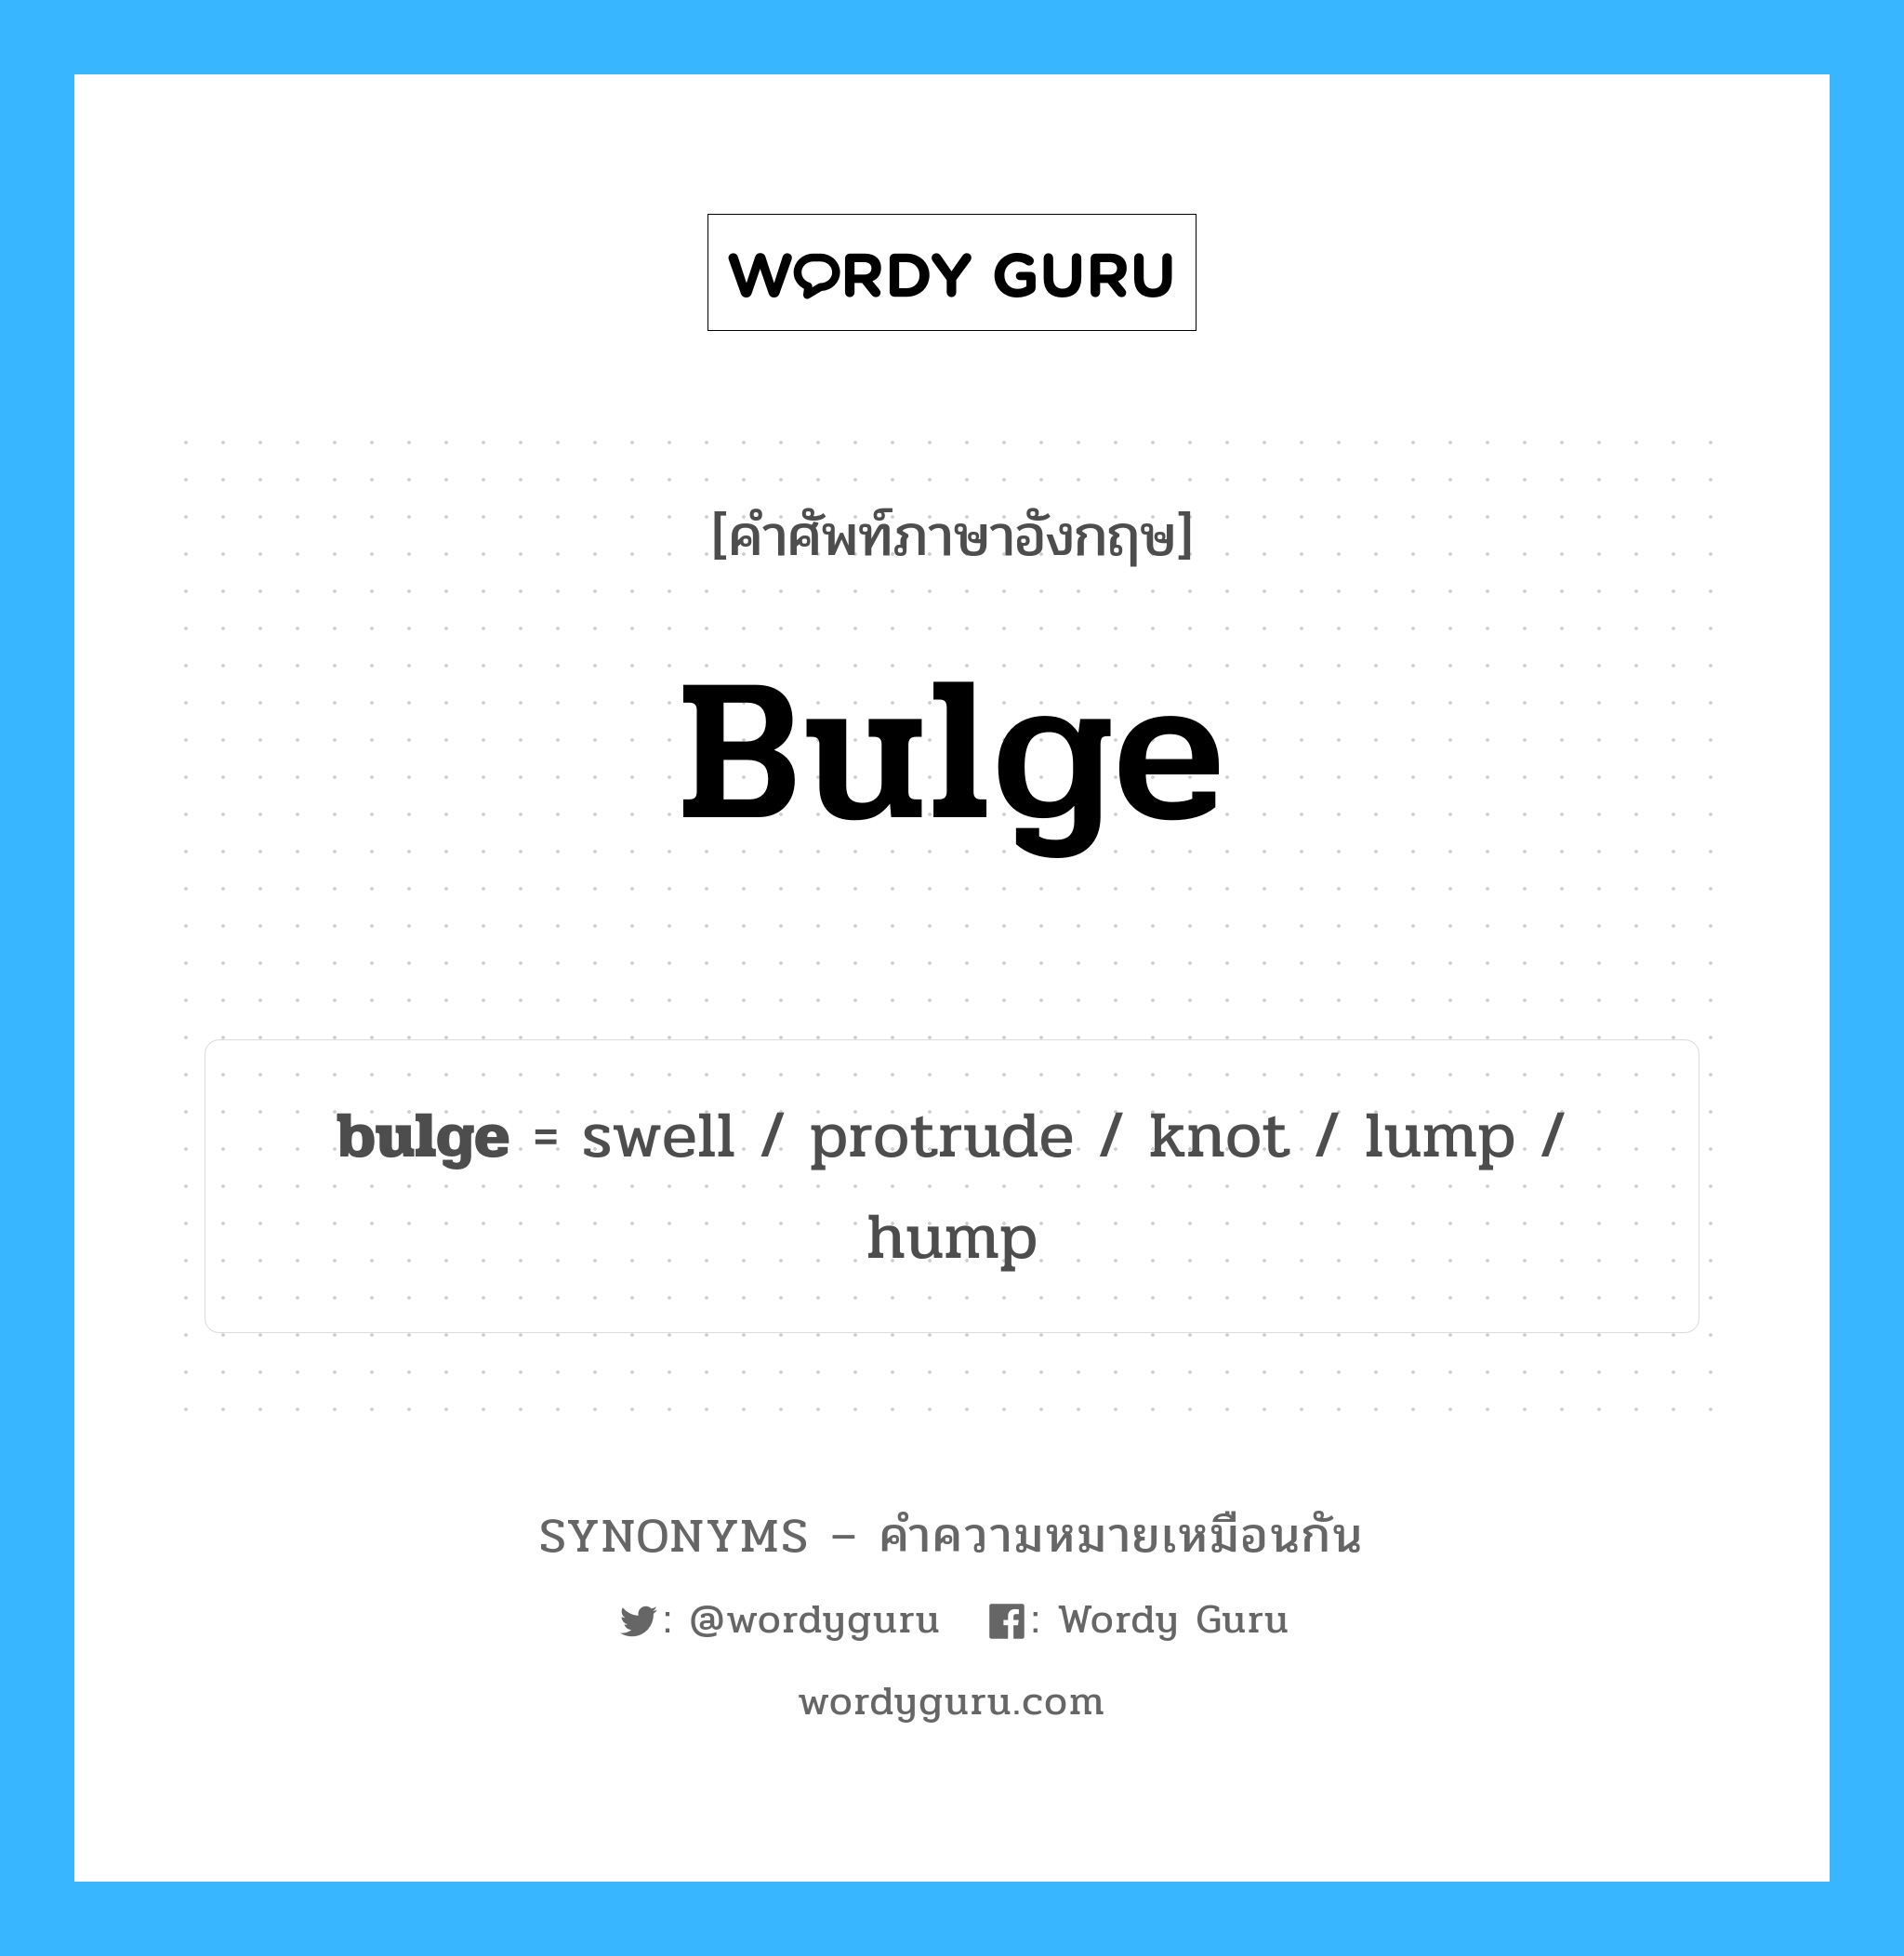 hump เป็นหนึ่งใน bulge และมีคำอื่น ๆ อีกดังนี้, คำศัพท์ภาษาอังกฤษ hump ความหมายคล้ายกันกับ bulge แปลว่า เกมทะลึ่ง หมวด bulge